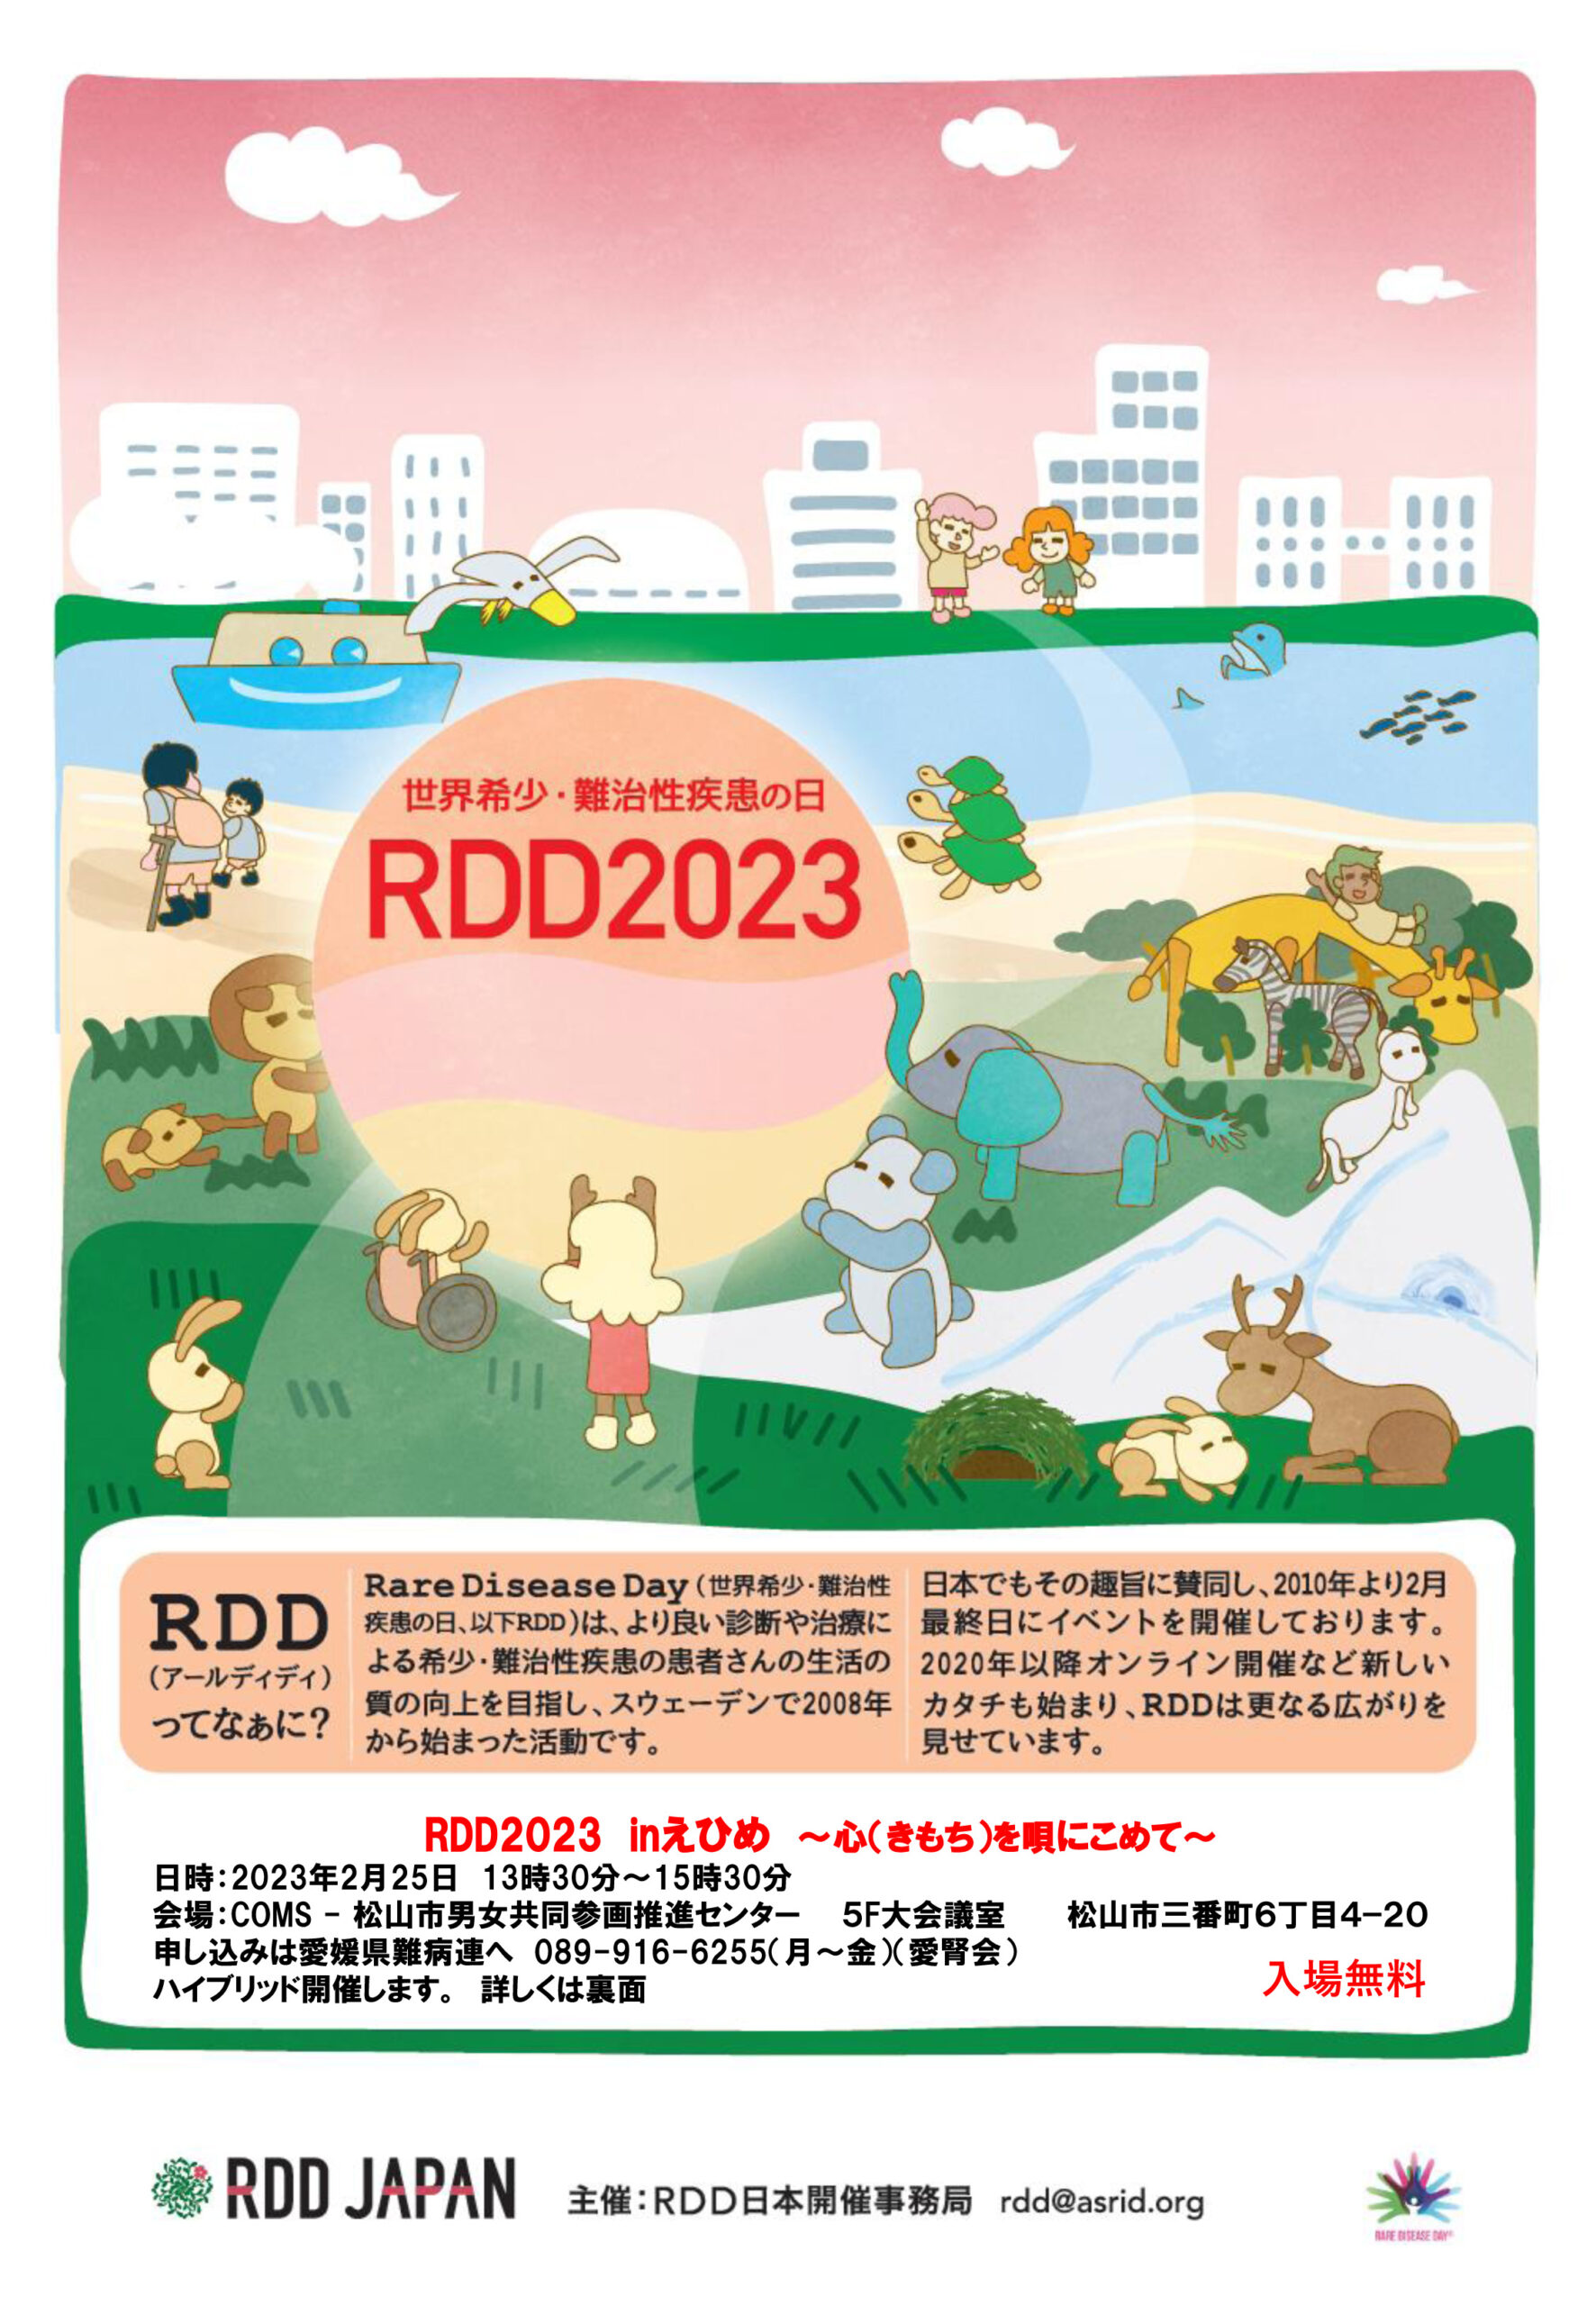 世界希少・難治性疾患の日 RDD2023 RDD（アールディディ）ってなぁに？ Rare Disease Day（世界希少・難治性疾患の日、以下RDD）は、より良い診断や治療による希少・難治性疾患の患者さんの生活の質の向上を目指し、スウェーデンで2008年から始まった活動です。 日本でもその趣旨に賛同し、2010年より2月最終日にイベントを開催しております。2020年以降オンライン開催など新しいカタチも始まり、RDDはさらなる広がりを見せています。 RDD2023 inえひめ ～心（きもち）を唄にこめて～ 日時：2023年2月25日 13時30分～15時30分 会場：COMS-松山市男女共同参画推進センター 5F大会議室 松山市三番町6丁目4-20 申し込みは愛媛県難病連へ 089-916-6255（月～金）（愛腎会） ハイブリッド開催します。詳しくは裏面 入場無料 RDD JAPAN 主催：RDD日本開催事務局 rdd@asrid.org